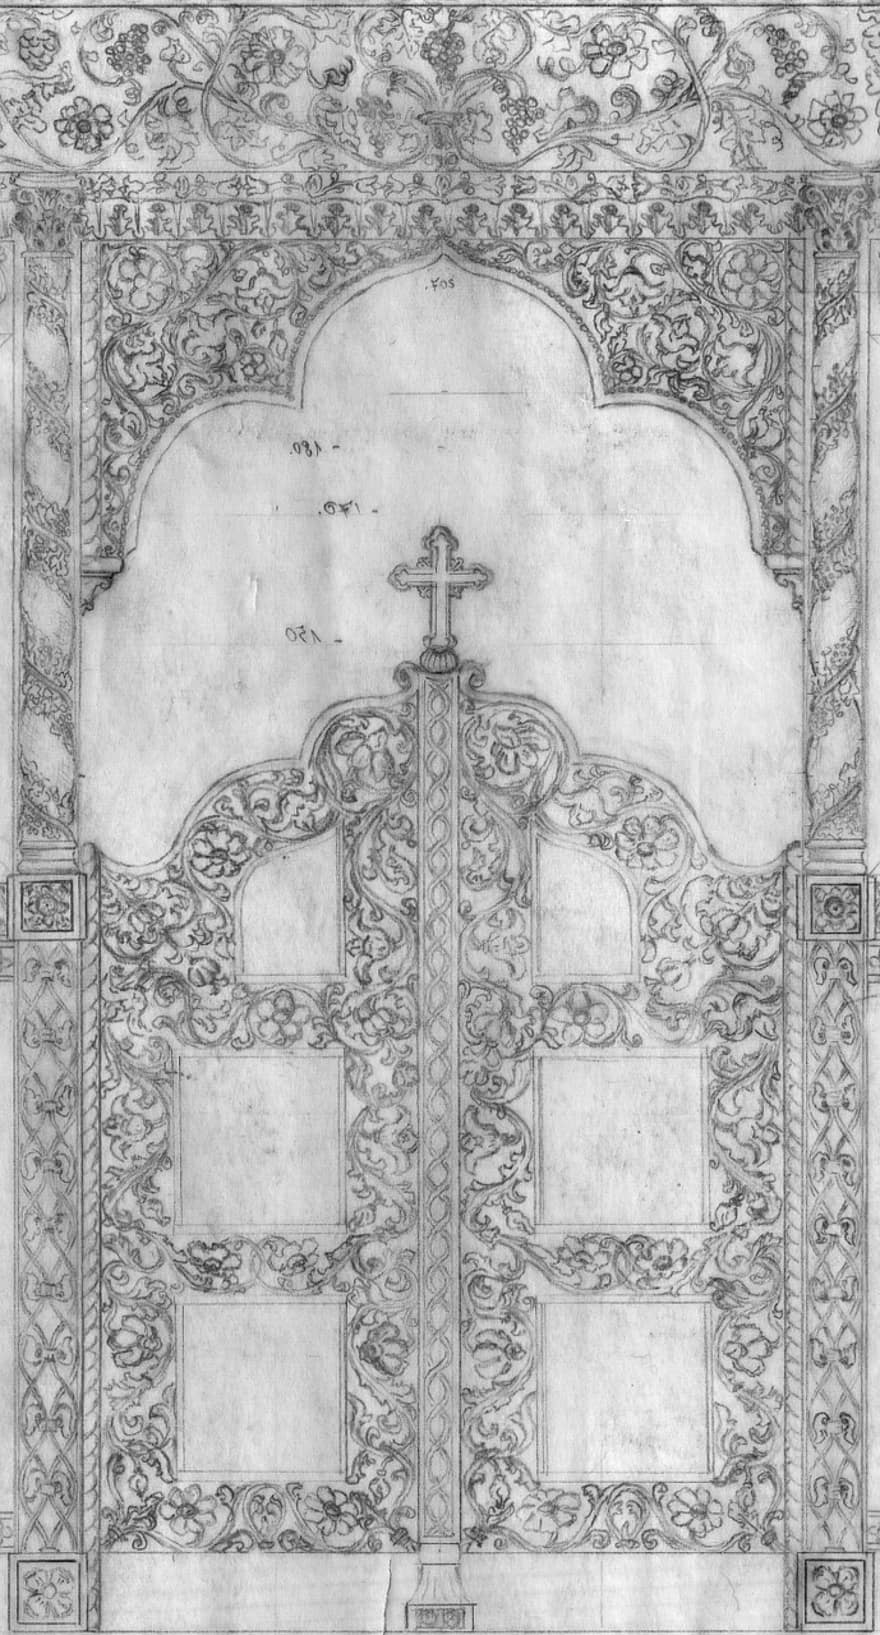 Iconostasis, Iconostasis Altar, Altar Door, Church Door, Church, Input, Architecture, Goal, Wooden Door, Portal, Wood Carving